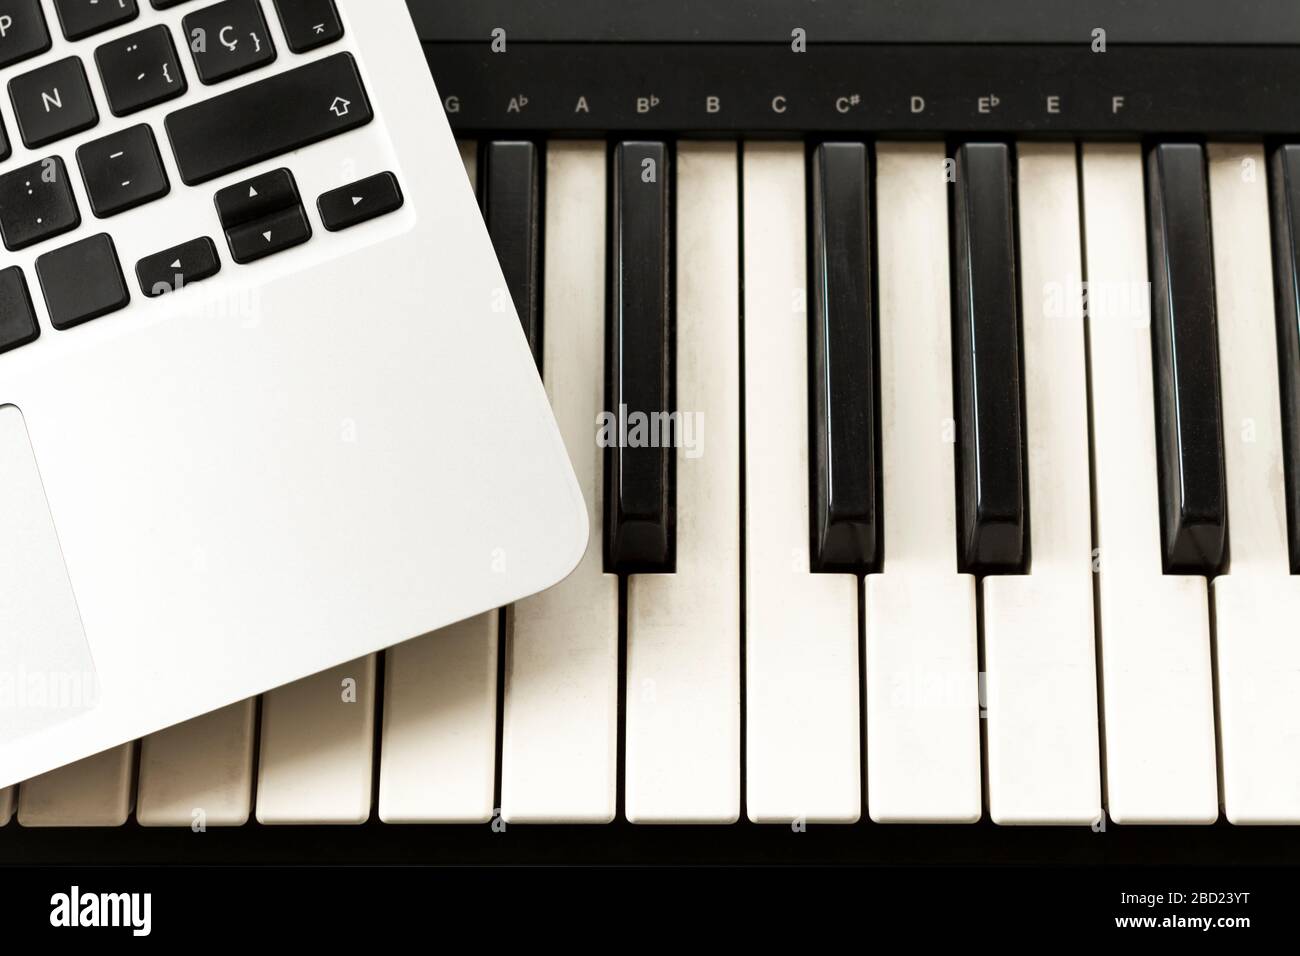 Clavier et ordinateur. Concepts d'apprentissage pour jouer de la musique en ligne à la maison, travailler à domicile, autodidacte ou autodidacte Banque D'Images